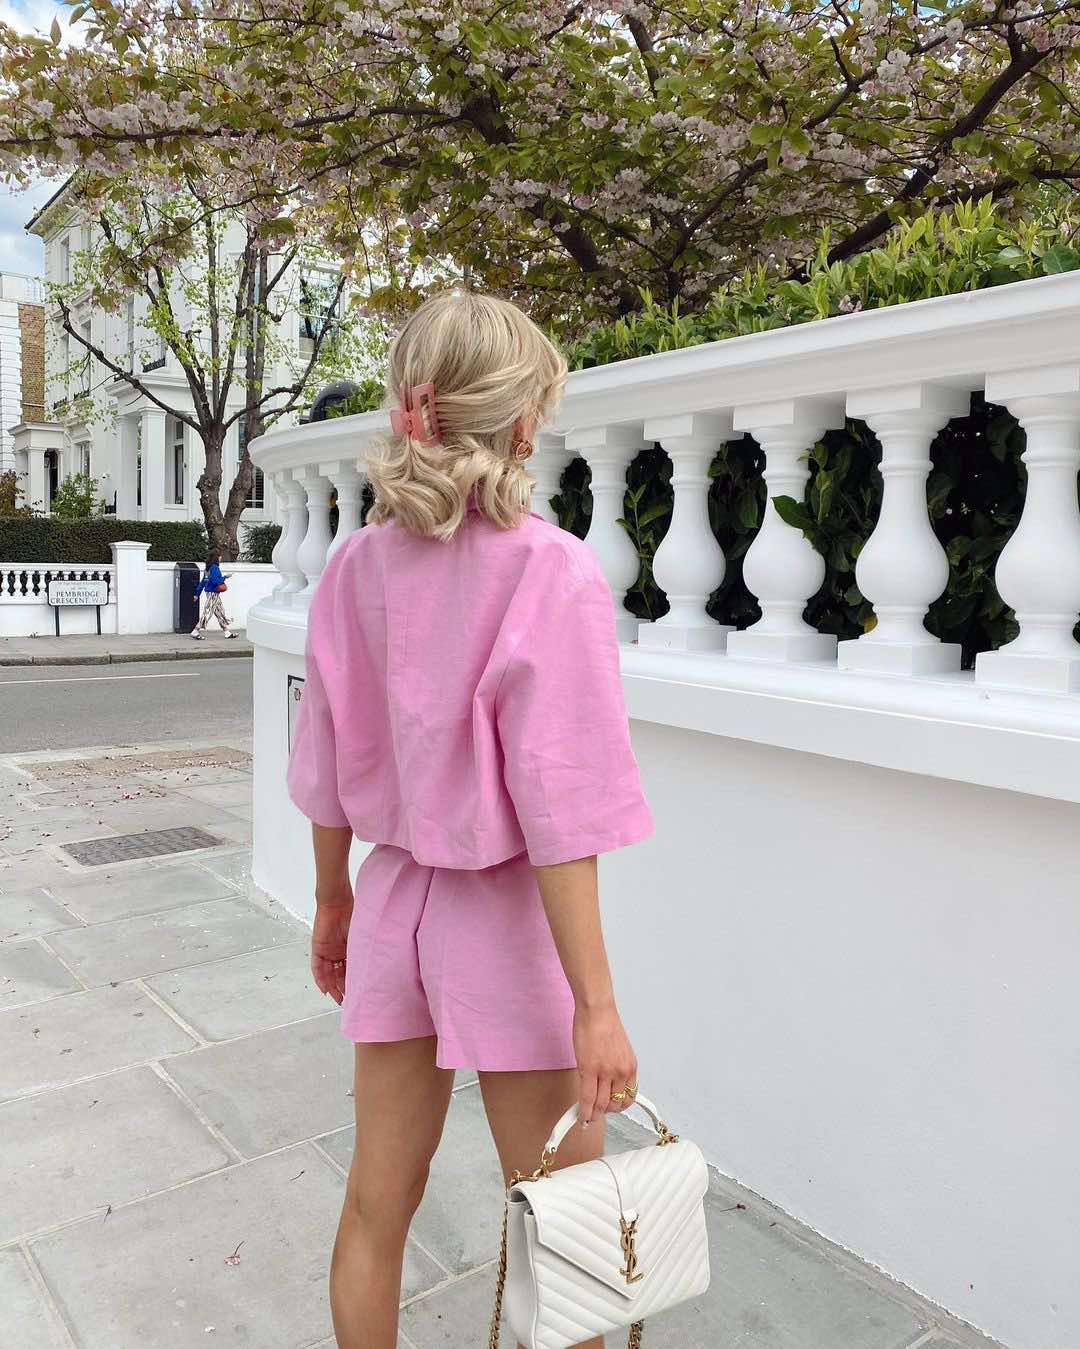 Дамски летен комплект Blossom Pink  https://bvseductive.com/products/дамски-летен-комплект-blossom-pink  Представяме ви перфектния летен комплект - модерено сако в комбинация със стилни къси панталонки. Идеален за горещите дни, този комплект съчетава стил и комфорт